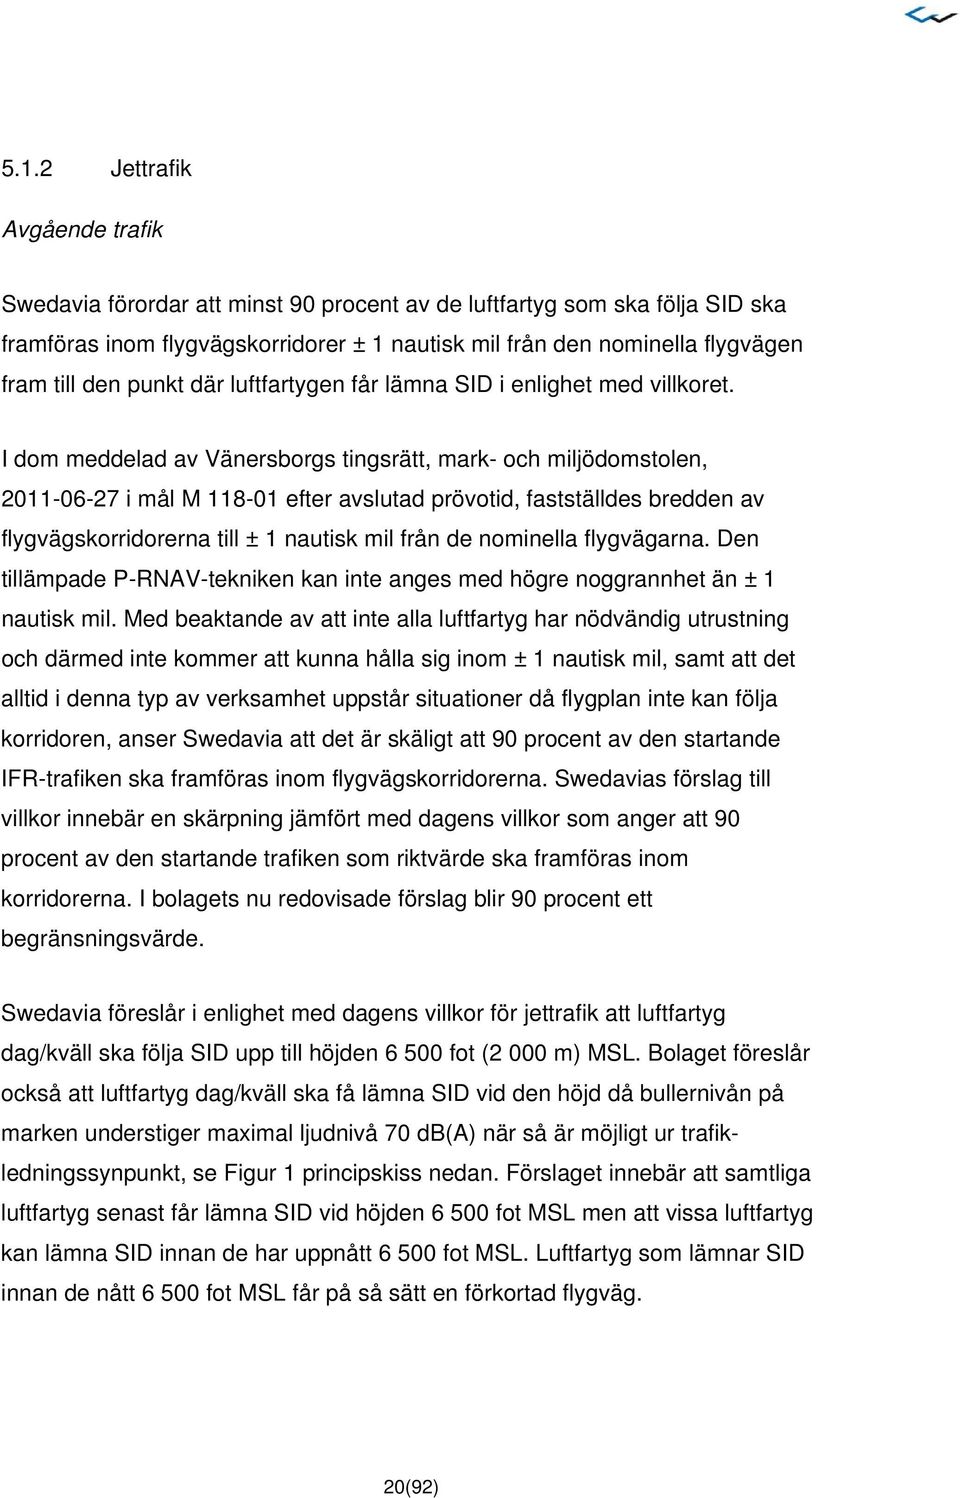 I dom meddelad av Vänersborgs tingsrätt, mark- och miljödomstolen, 2011-06-27 i mål M 118-01 efter avslutad prövotid, fastställdes bredden av flygvägskorridorerna till ± 1 nautisk mil från de